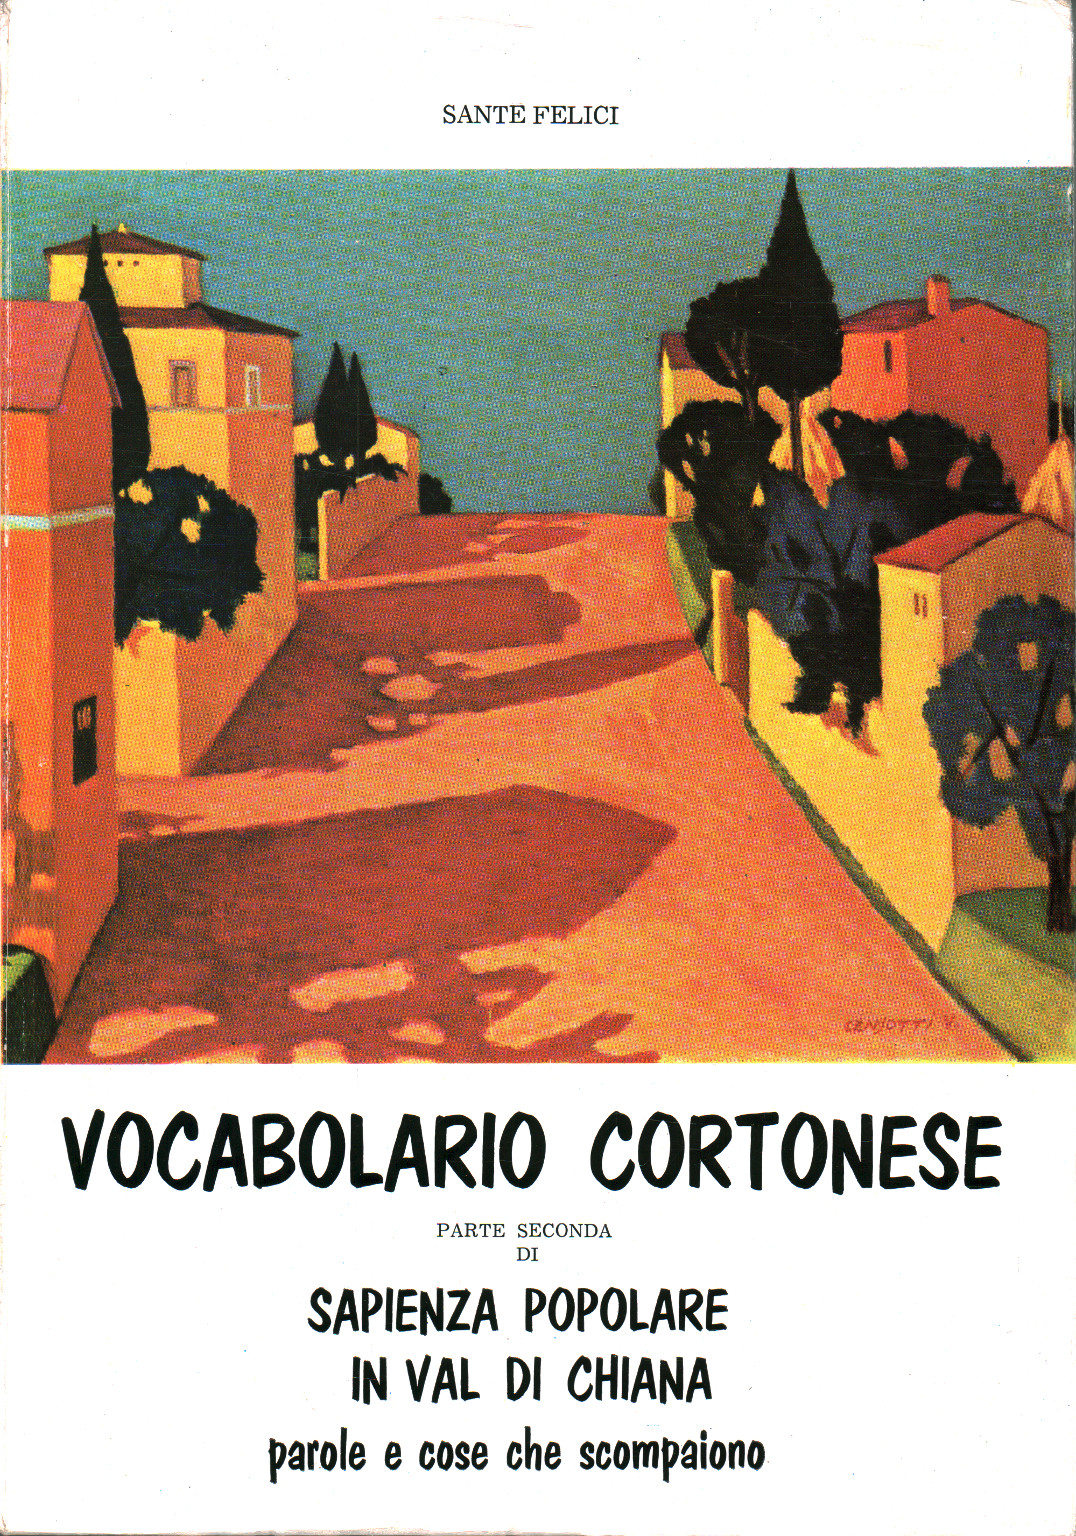 Vocabulario De Cortona. La sabiduría Popular en el valle, s.una.